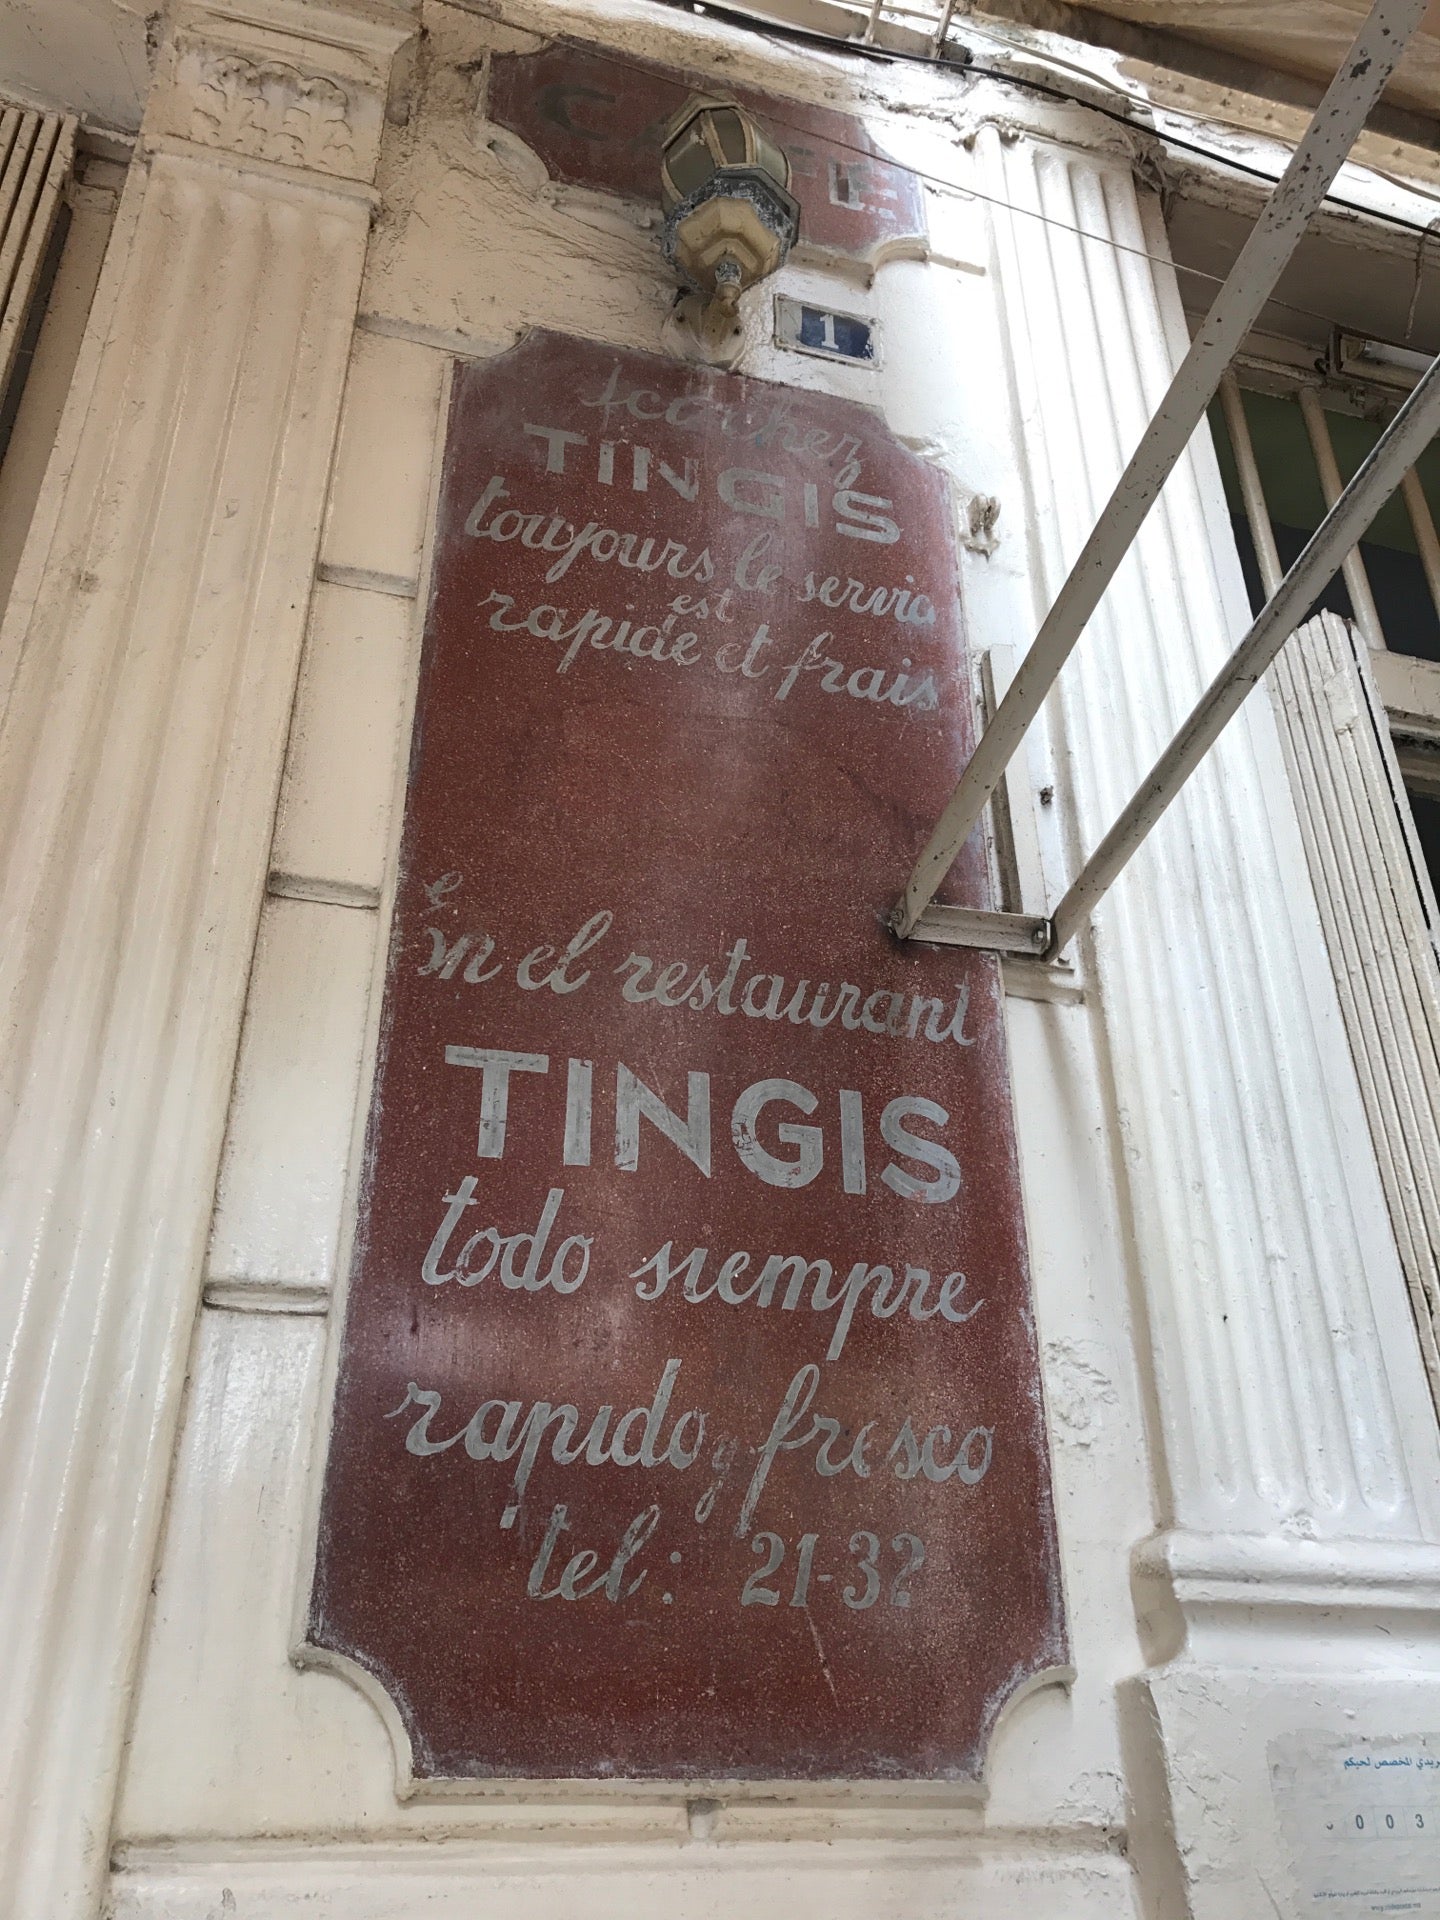 Cafe Tingis